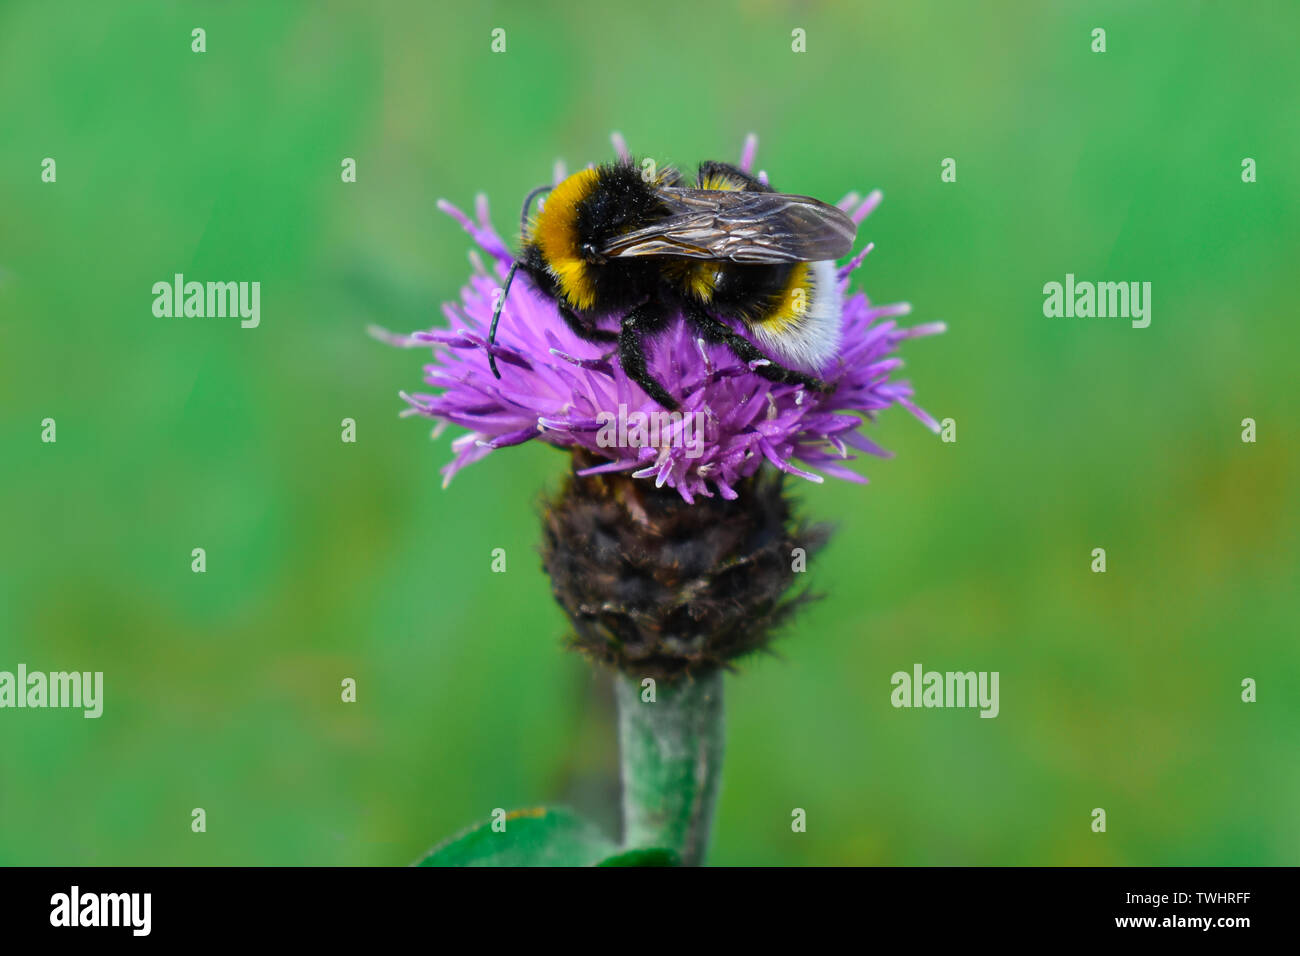 Eine Hummel auf einer lila Distel Stockfotografie - Alamy